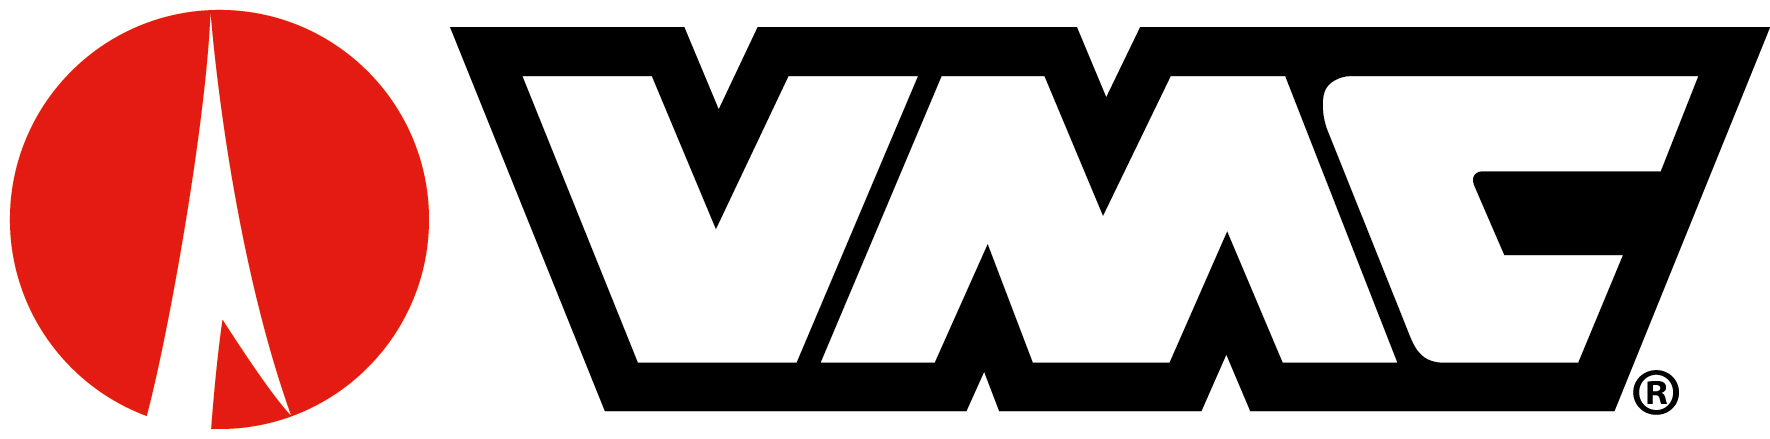 logo-banner-VMC